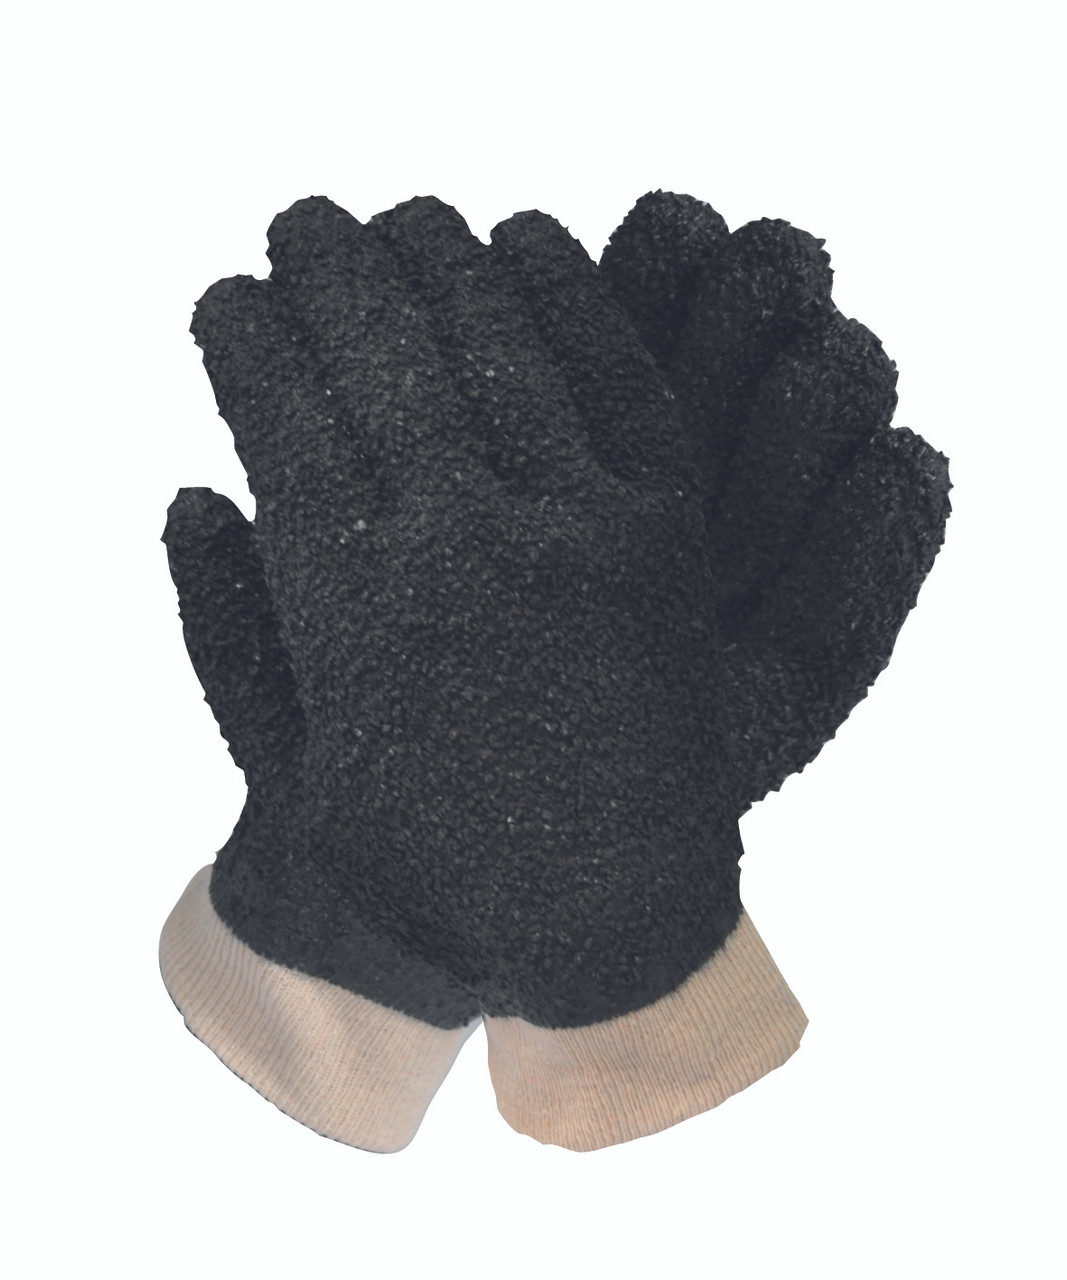 Grizzly Black Pvc Debudding Glove